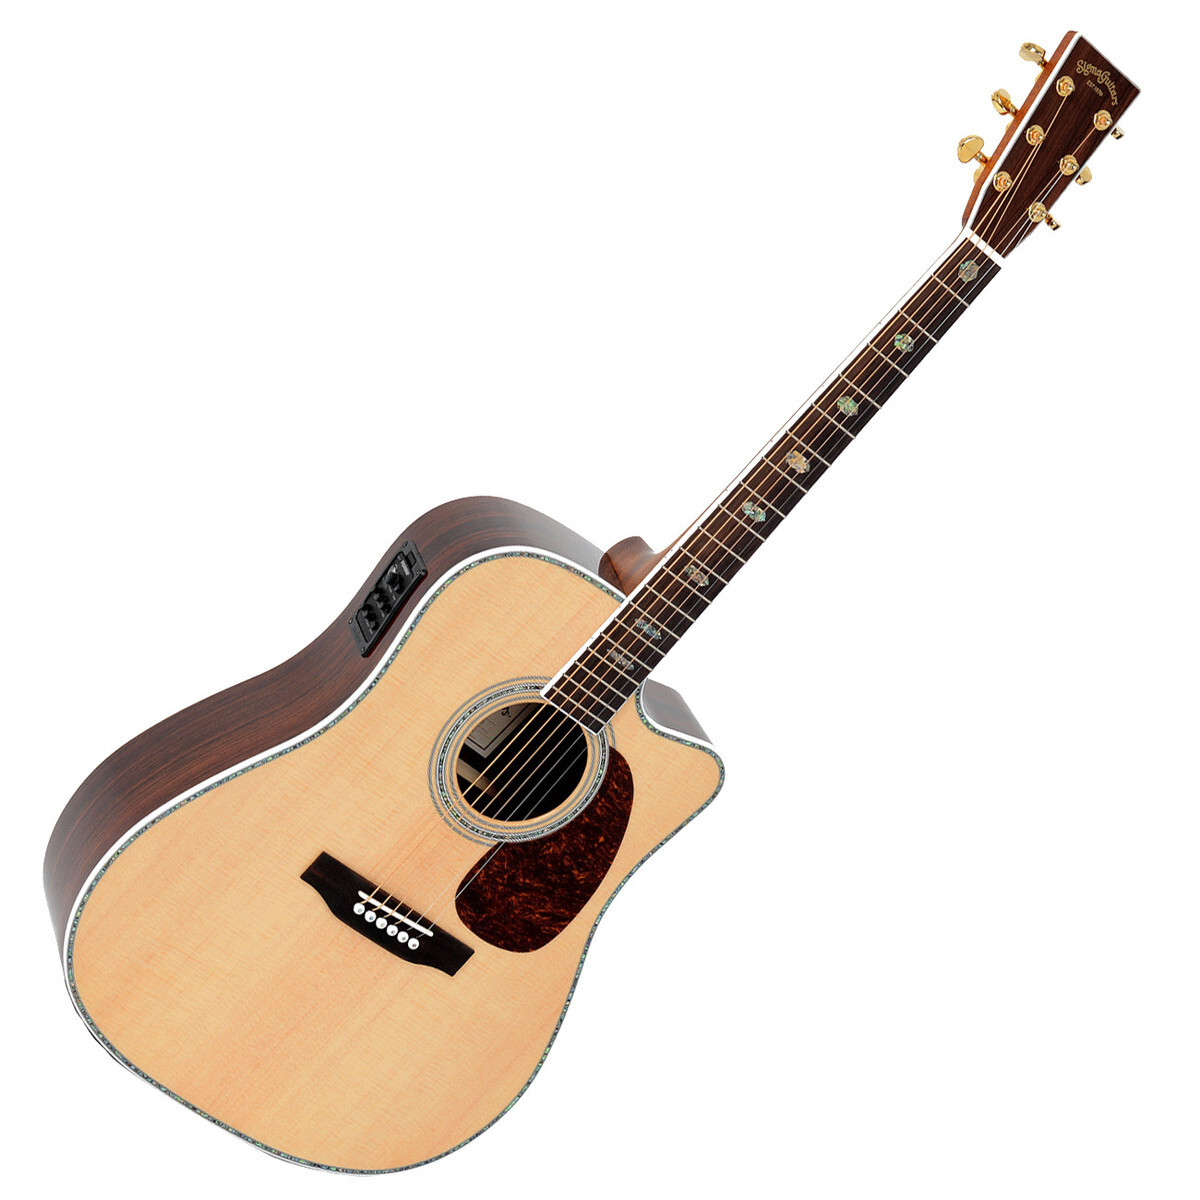 Đàn guitar Sigma DRC-41E